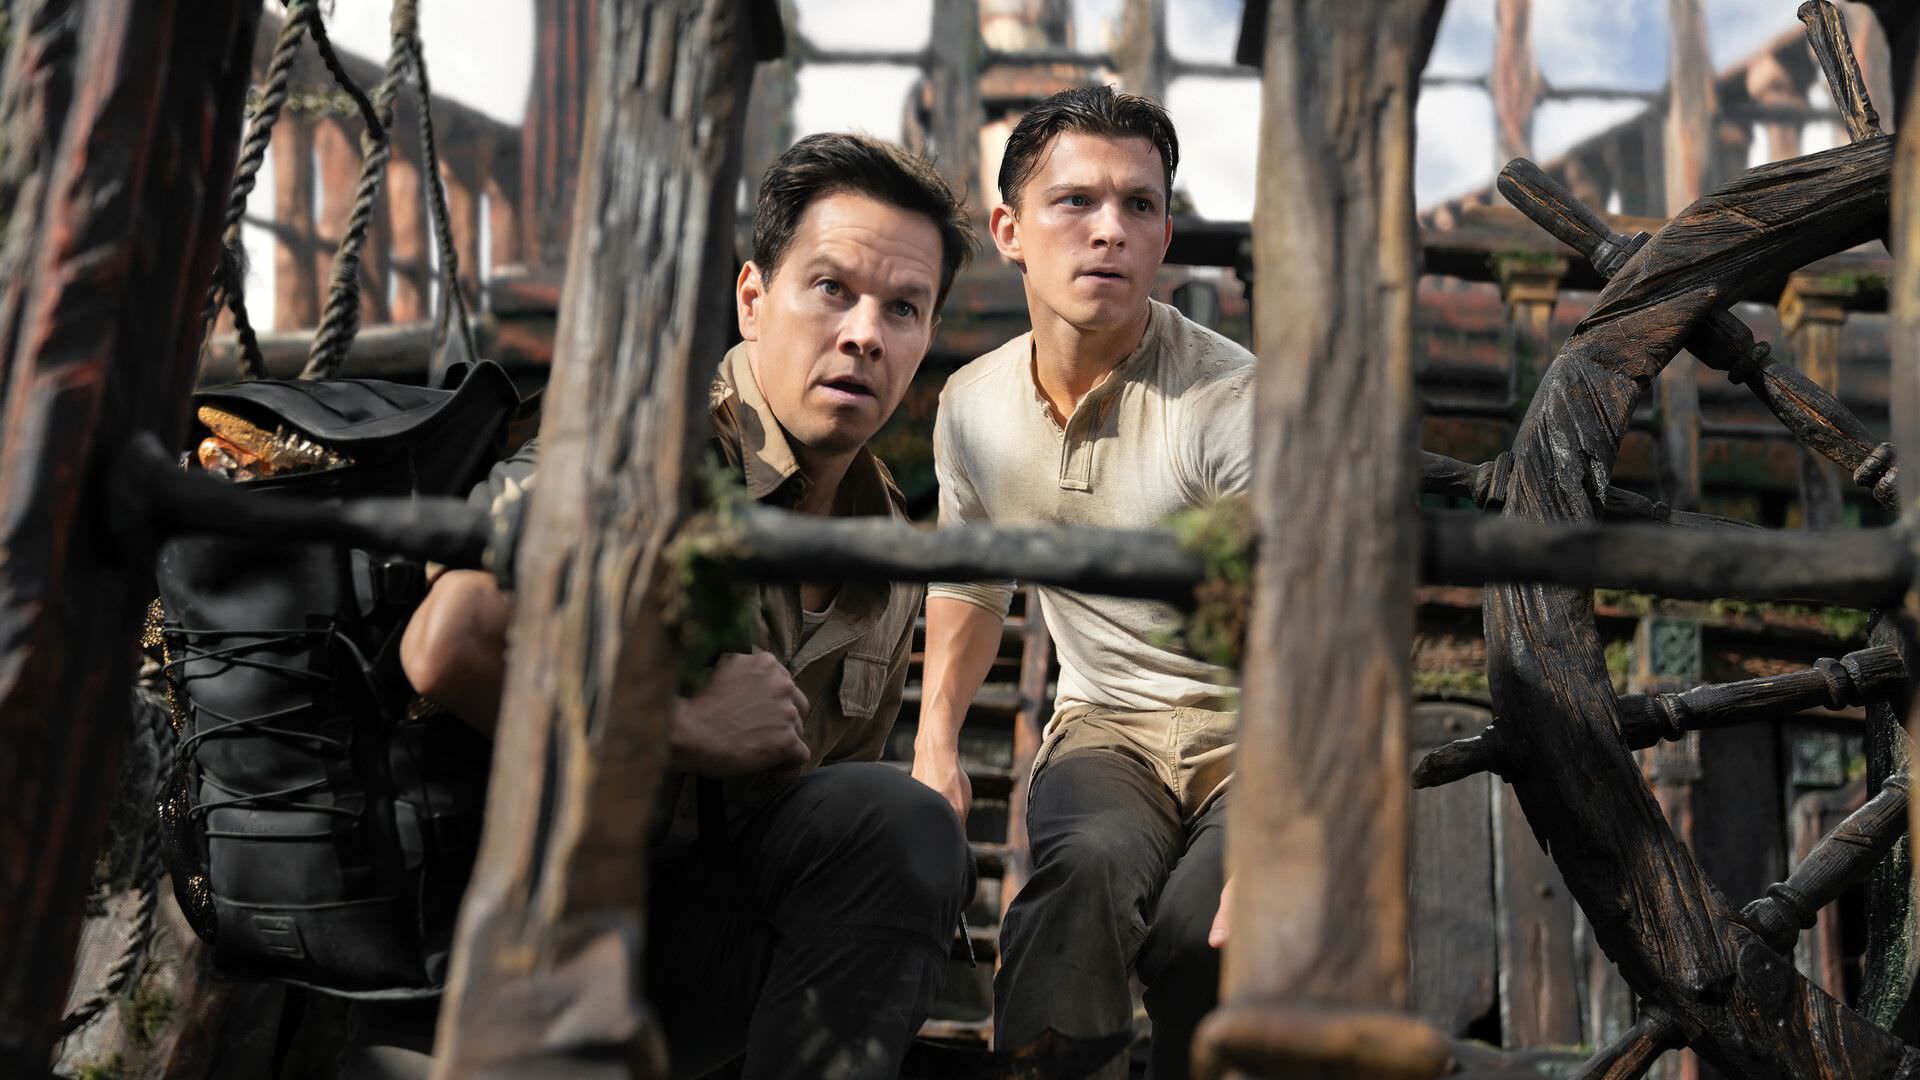 تام هالند در نقش نیتن دریک و مارک والبرگ در نقش سالی در کشتی قدیمی در فیلم Uncharted 